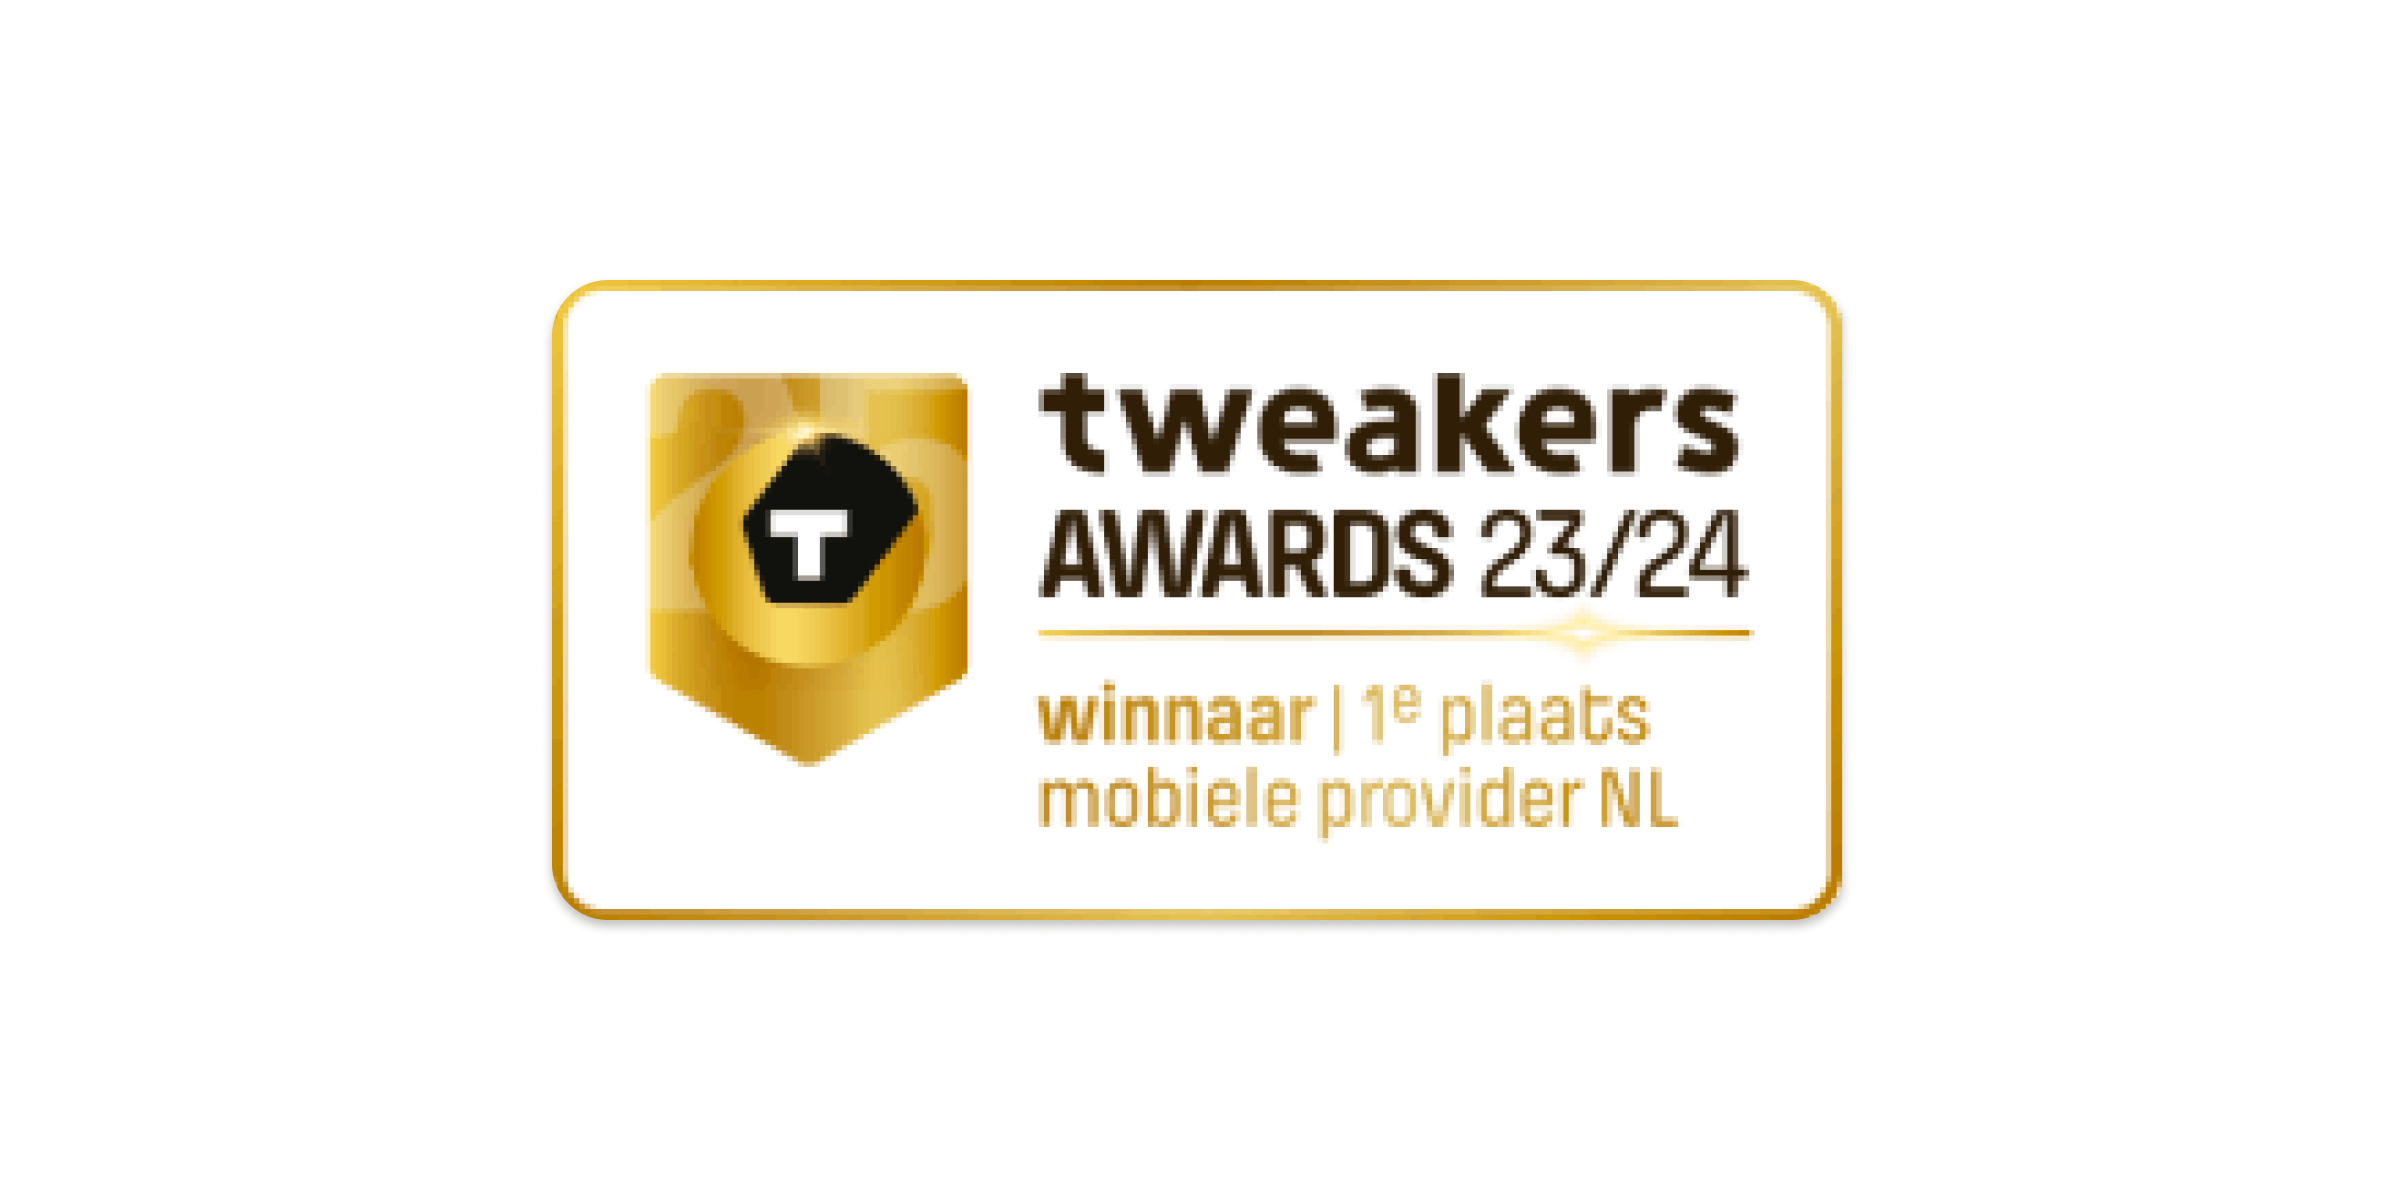 Tweakers awards 23/24 winnaar 1e plaats mobiele provider NL